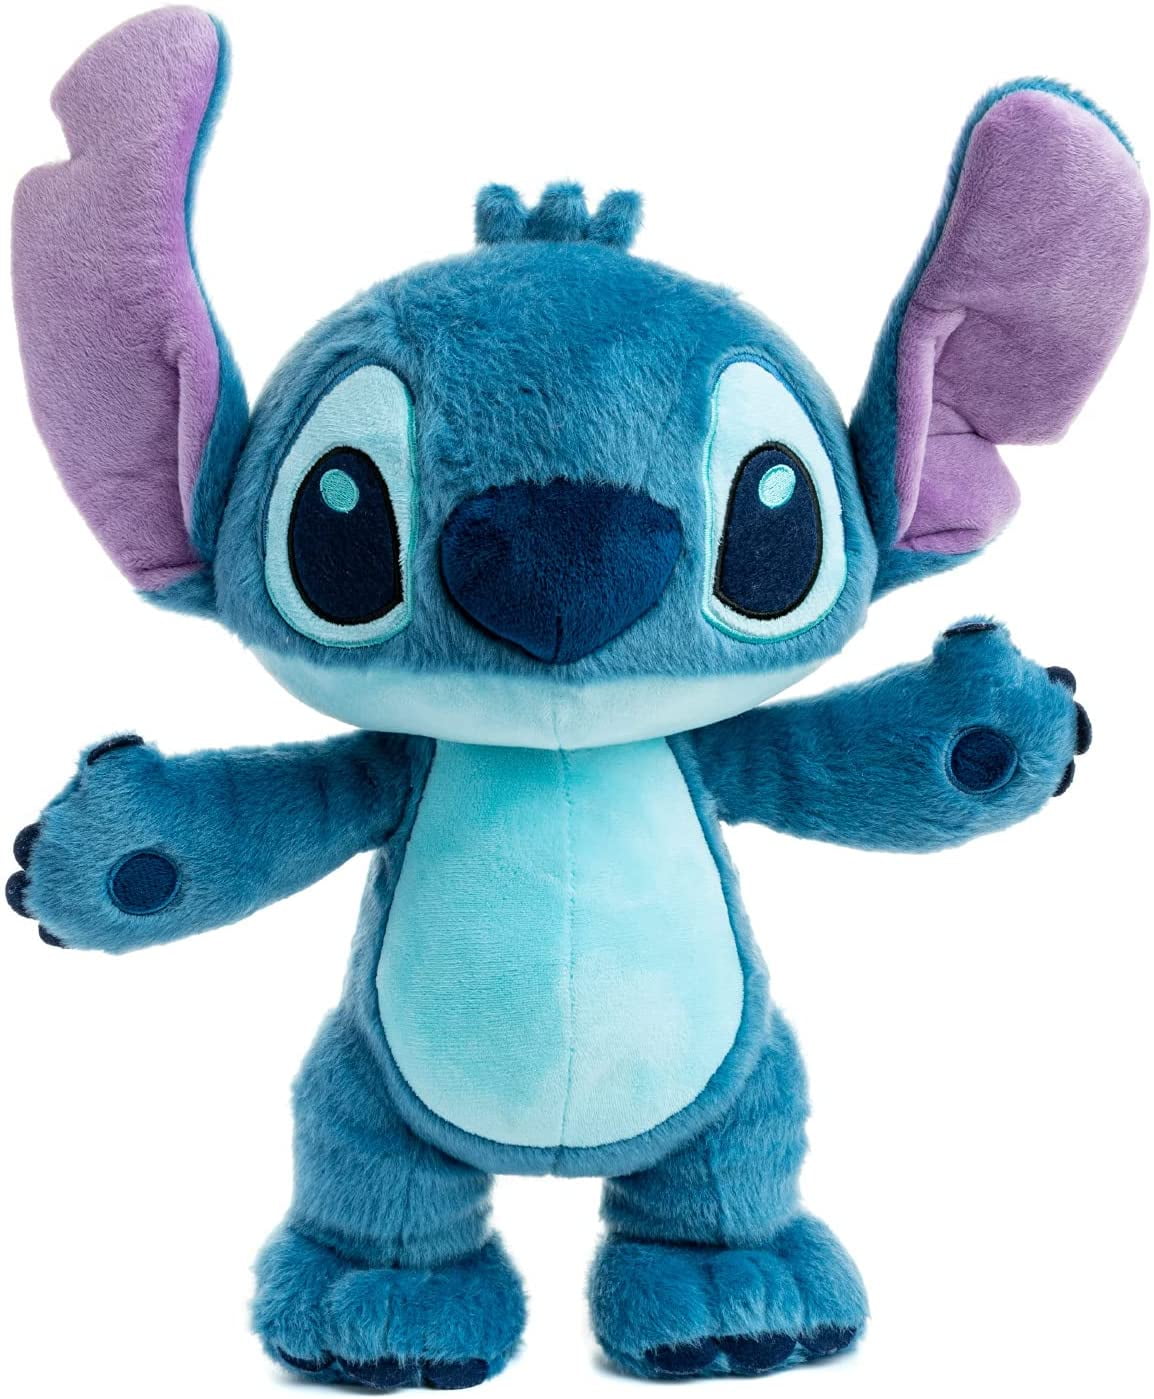 15 Disney Baby Lilo & Stitch Baby Stitch Stuffed Animal Plush Toy